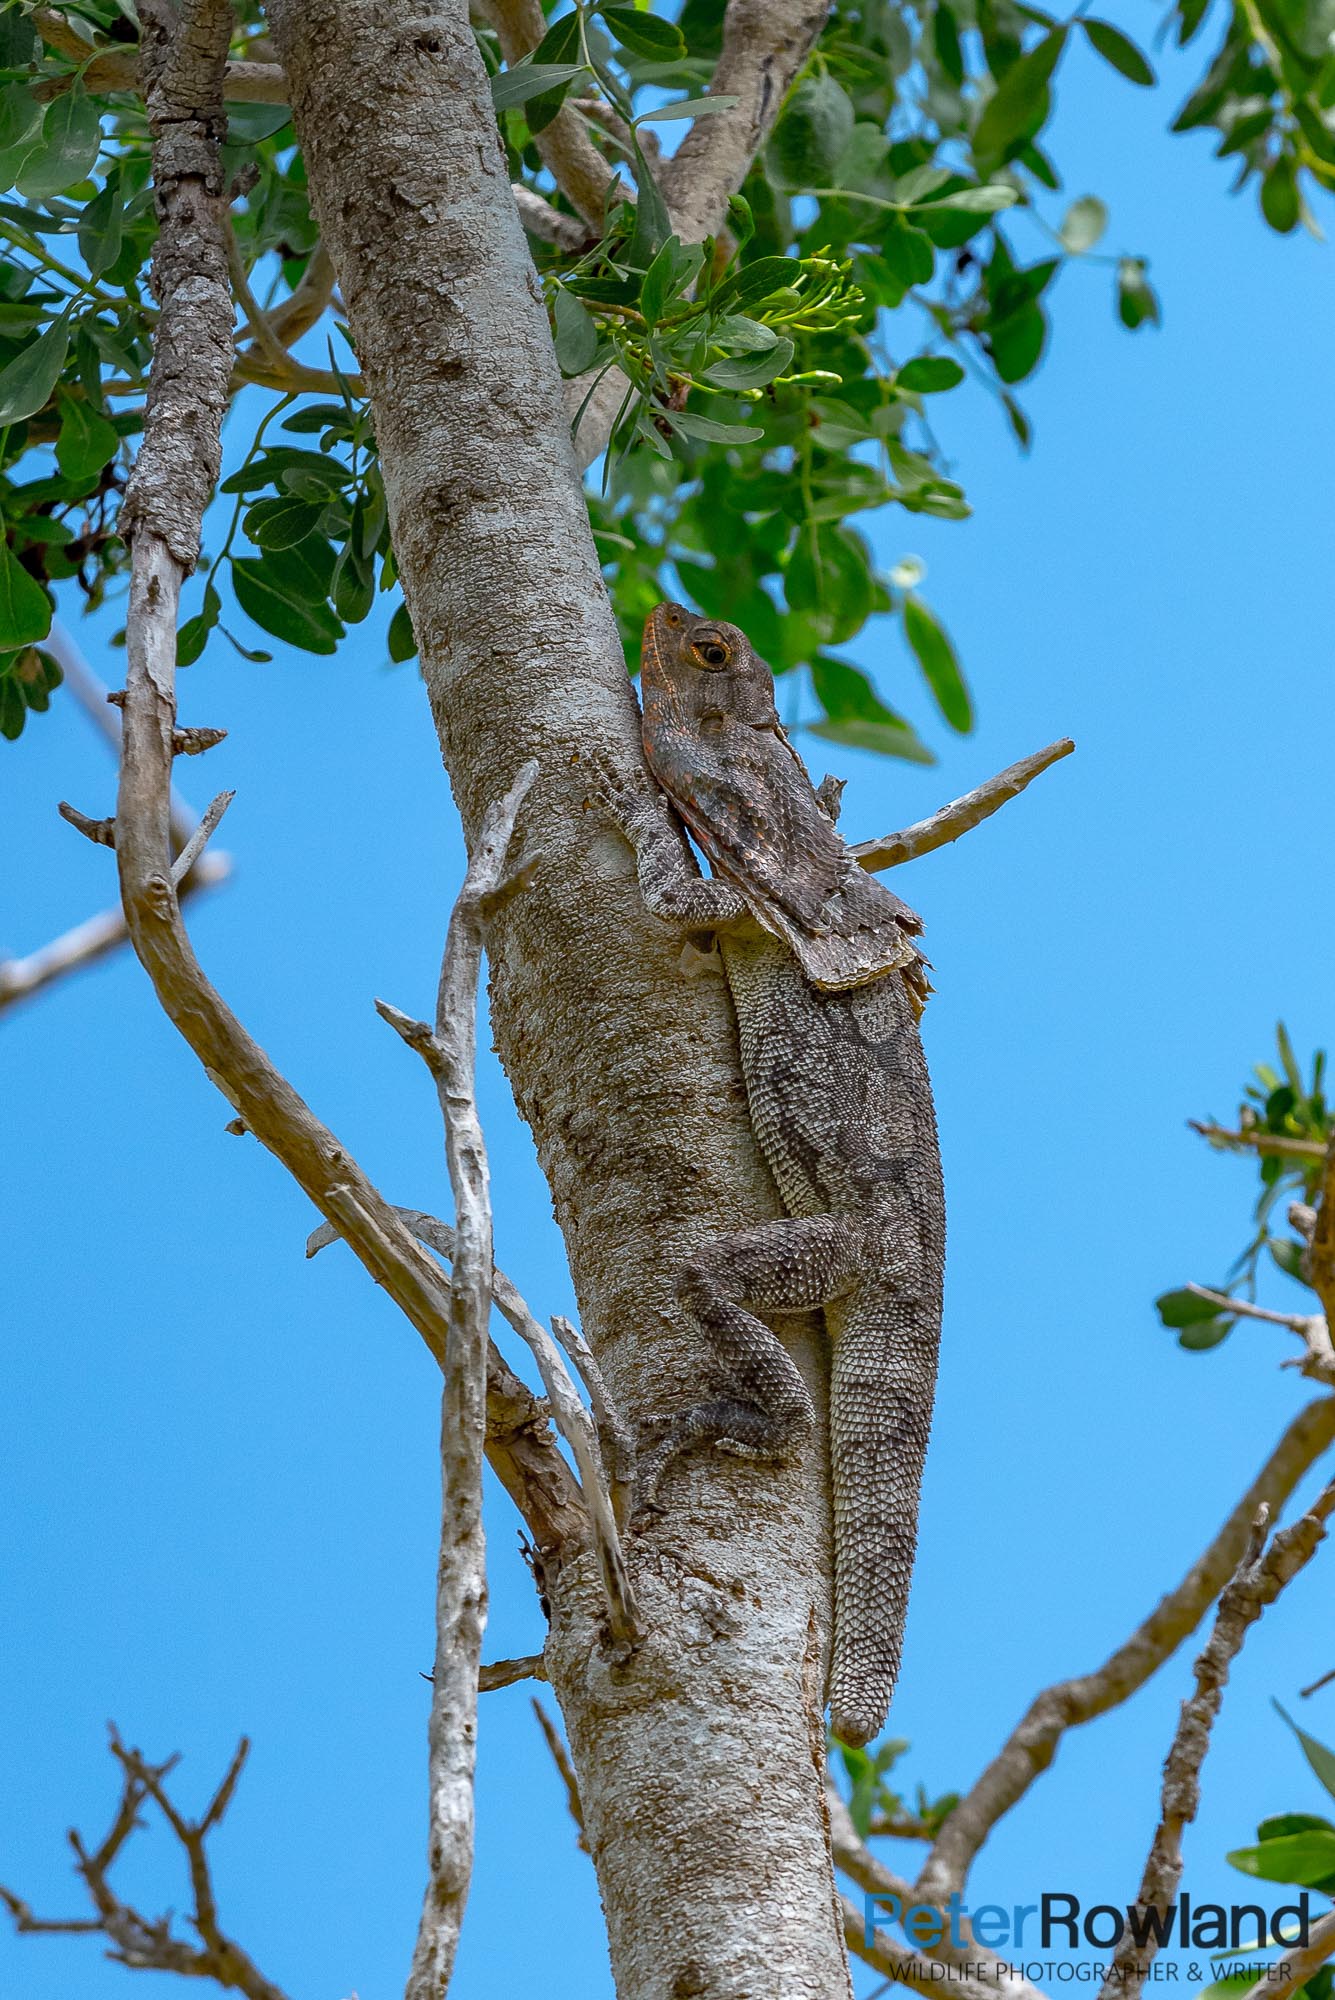 A Frilled Lizard climbing a tree